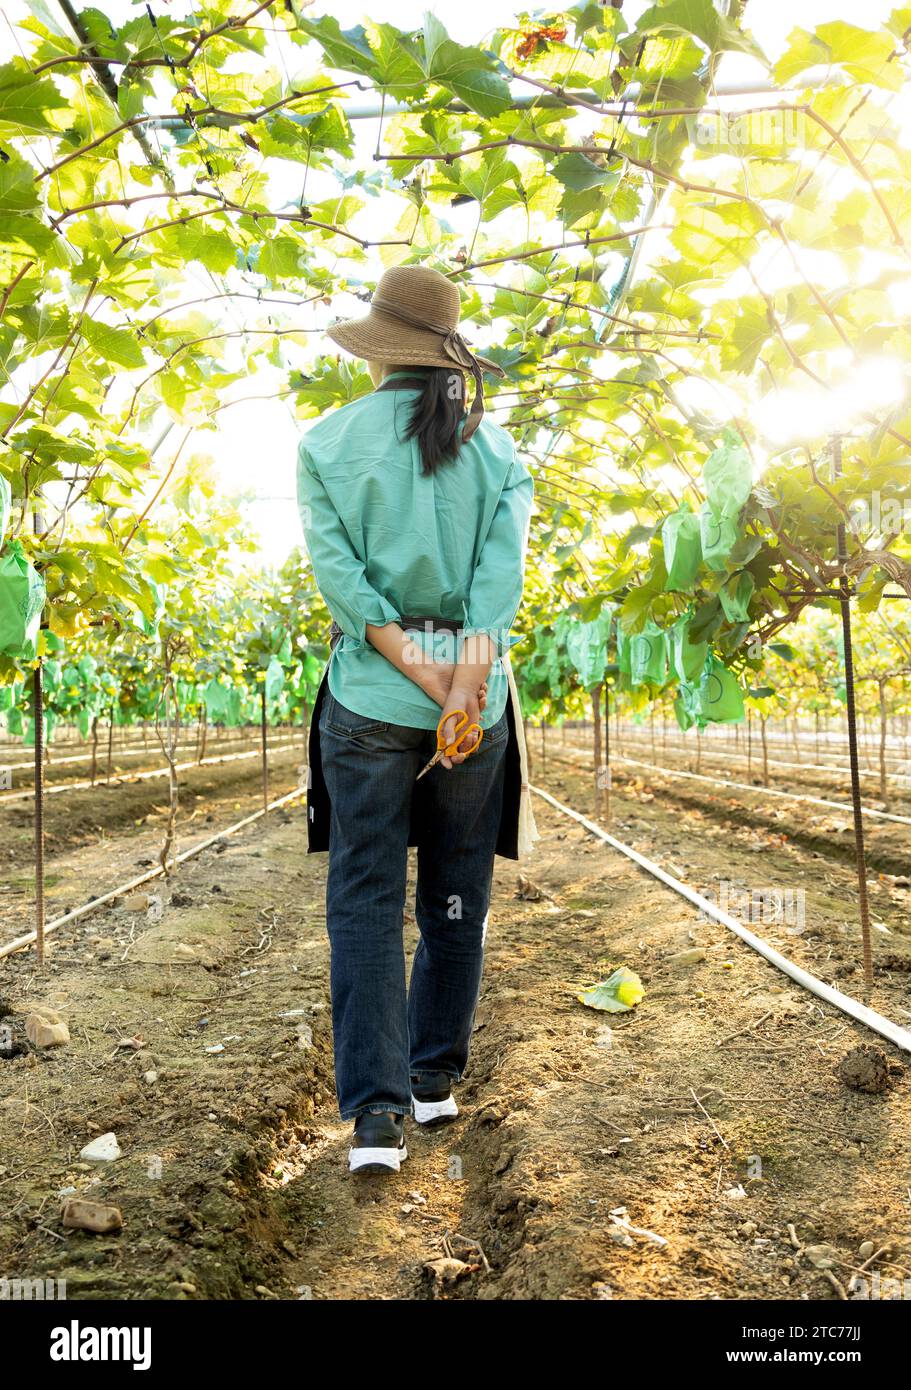 Vue arrière d'une jeune agricultrice coréenne marchant vers l'avant en regardant les récoltes de son vignoble Banque D'Images